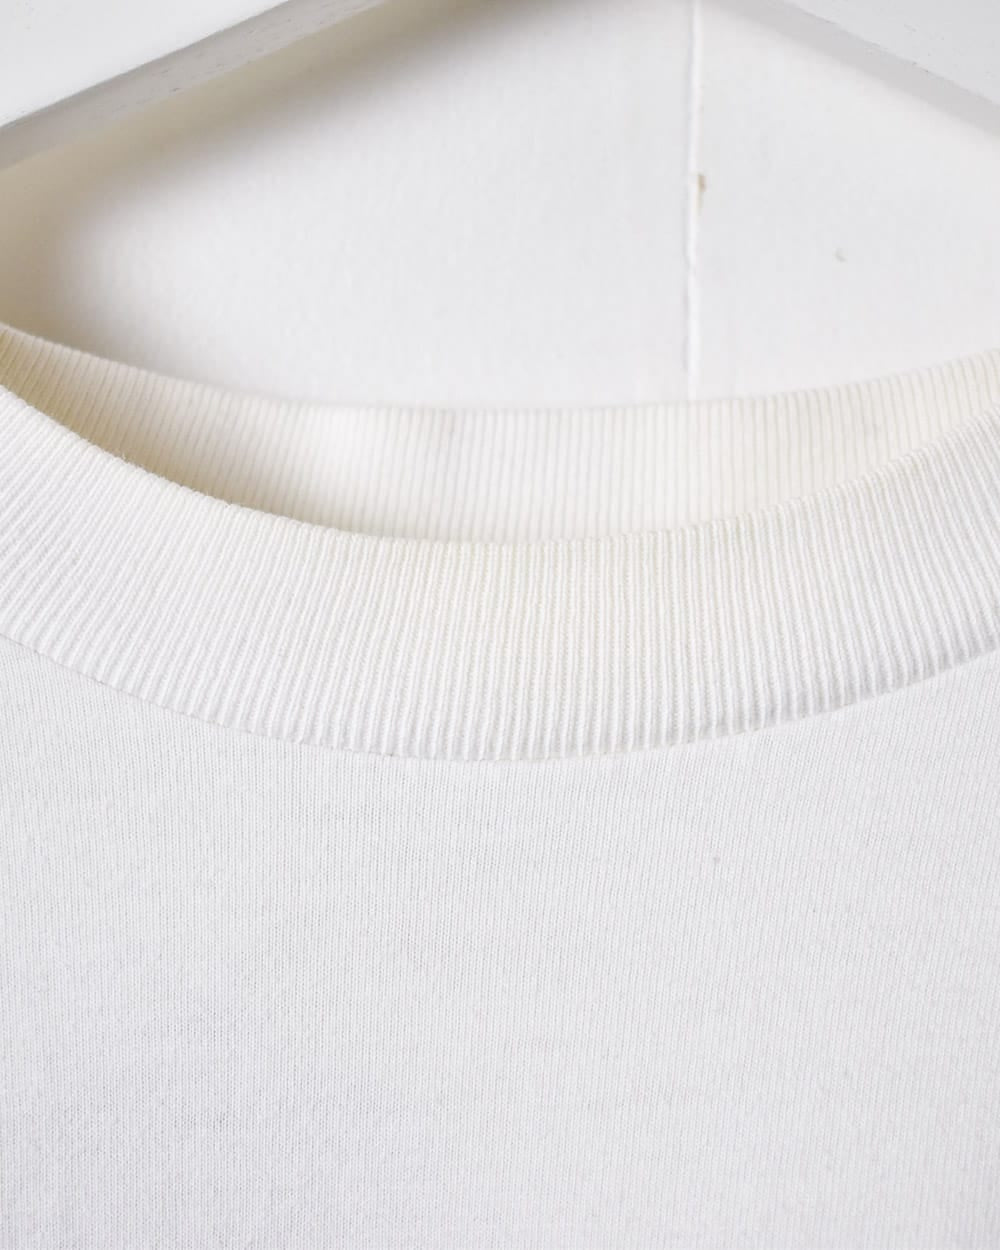 White Nike Long Sleeved T-Shirt - Large